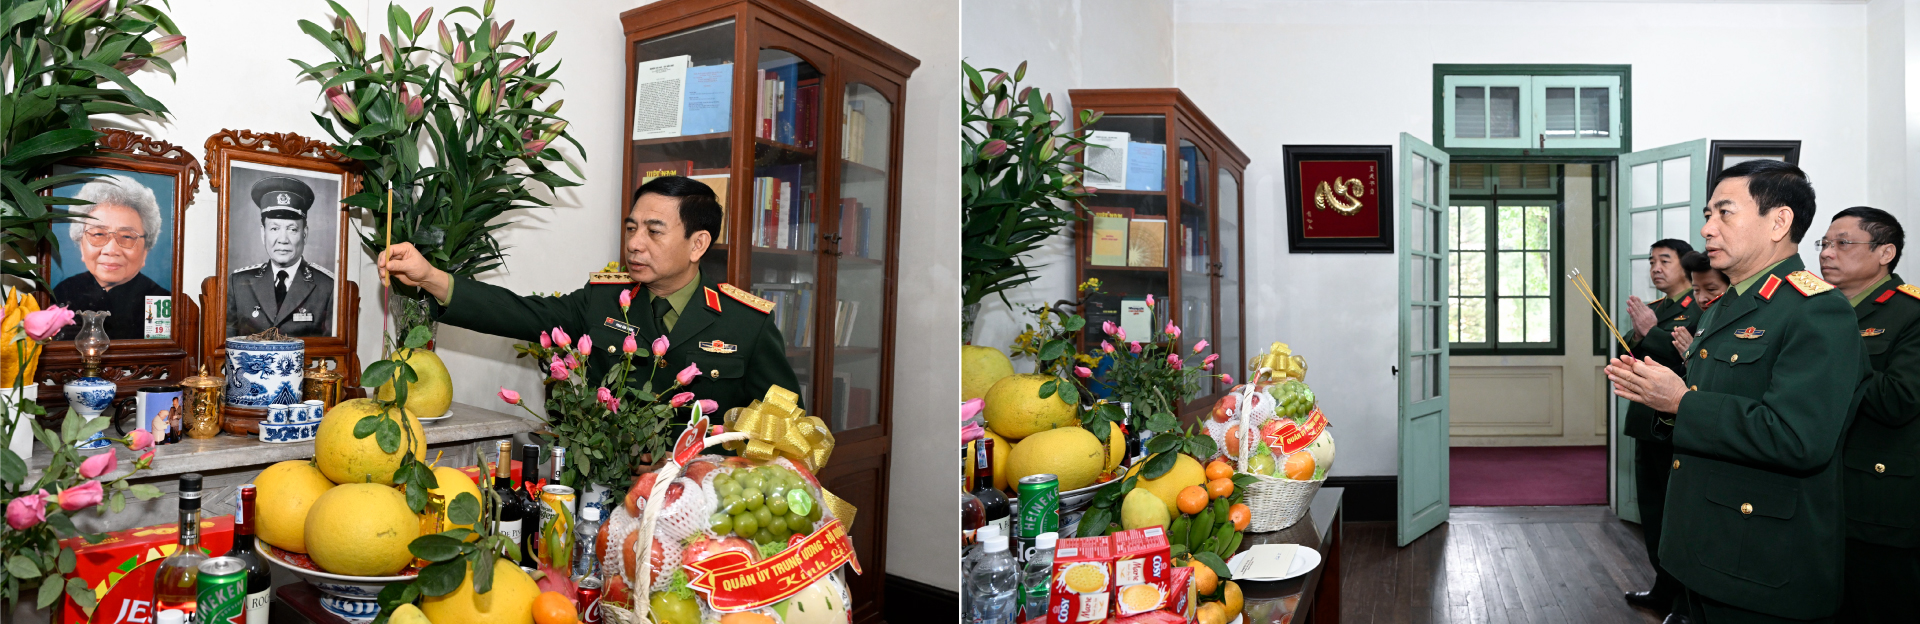 Đại tướng Phan Văn Giang thăm, tri ân nguyên lãnh đạo Quân đội và lão thành cách mạng